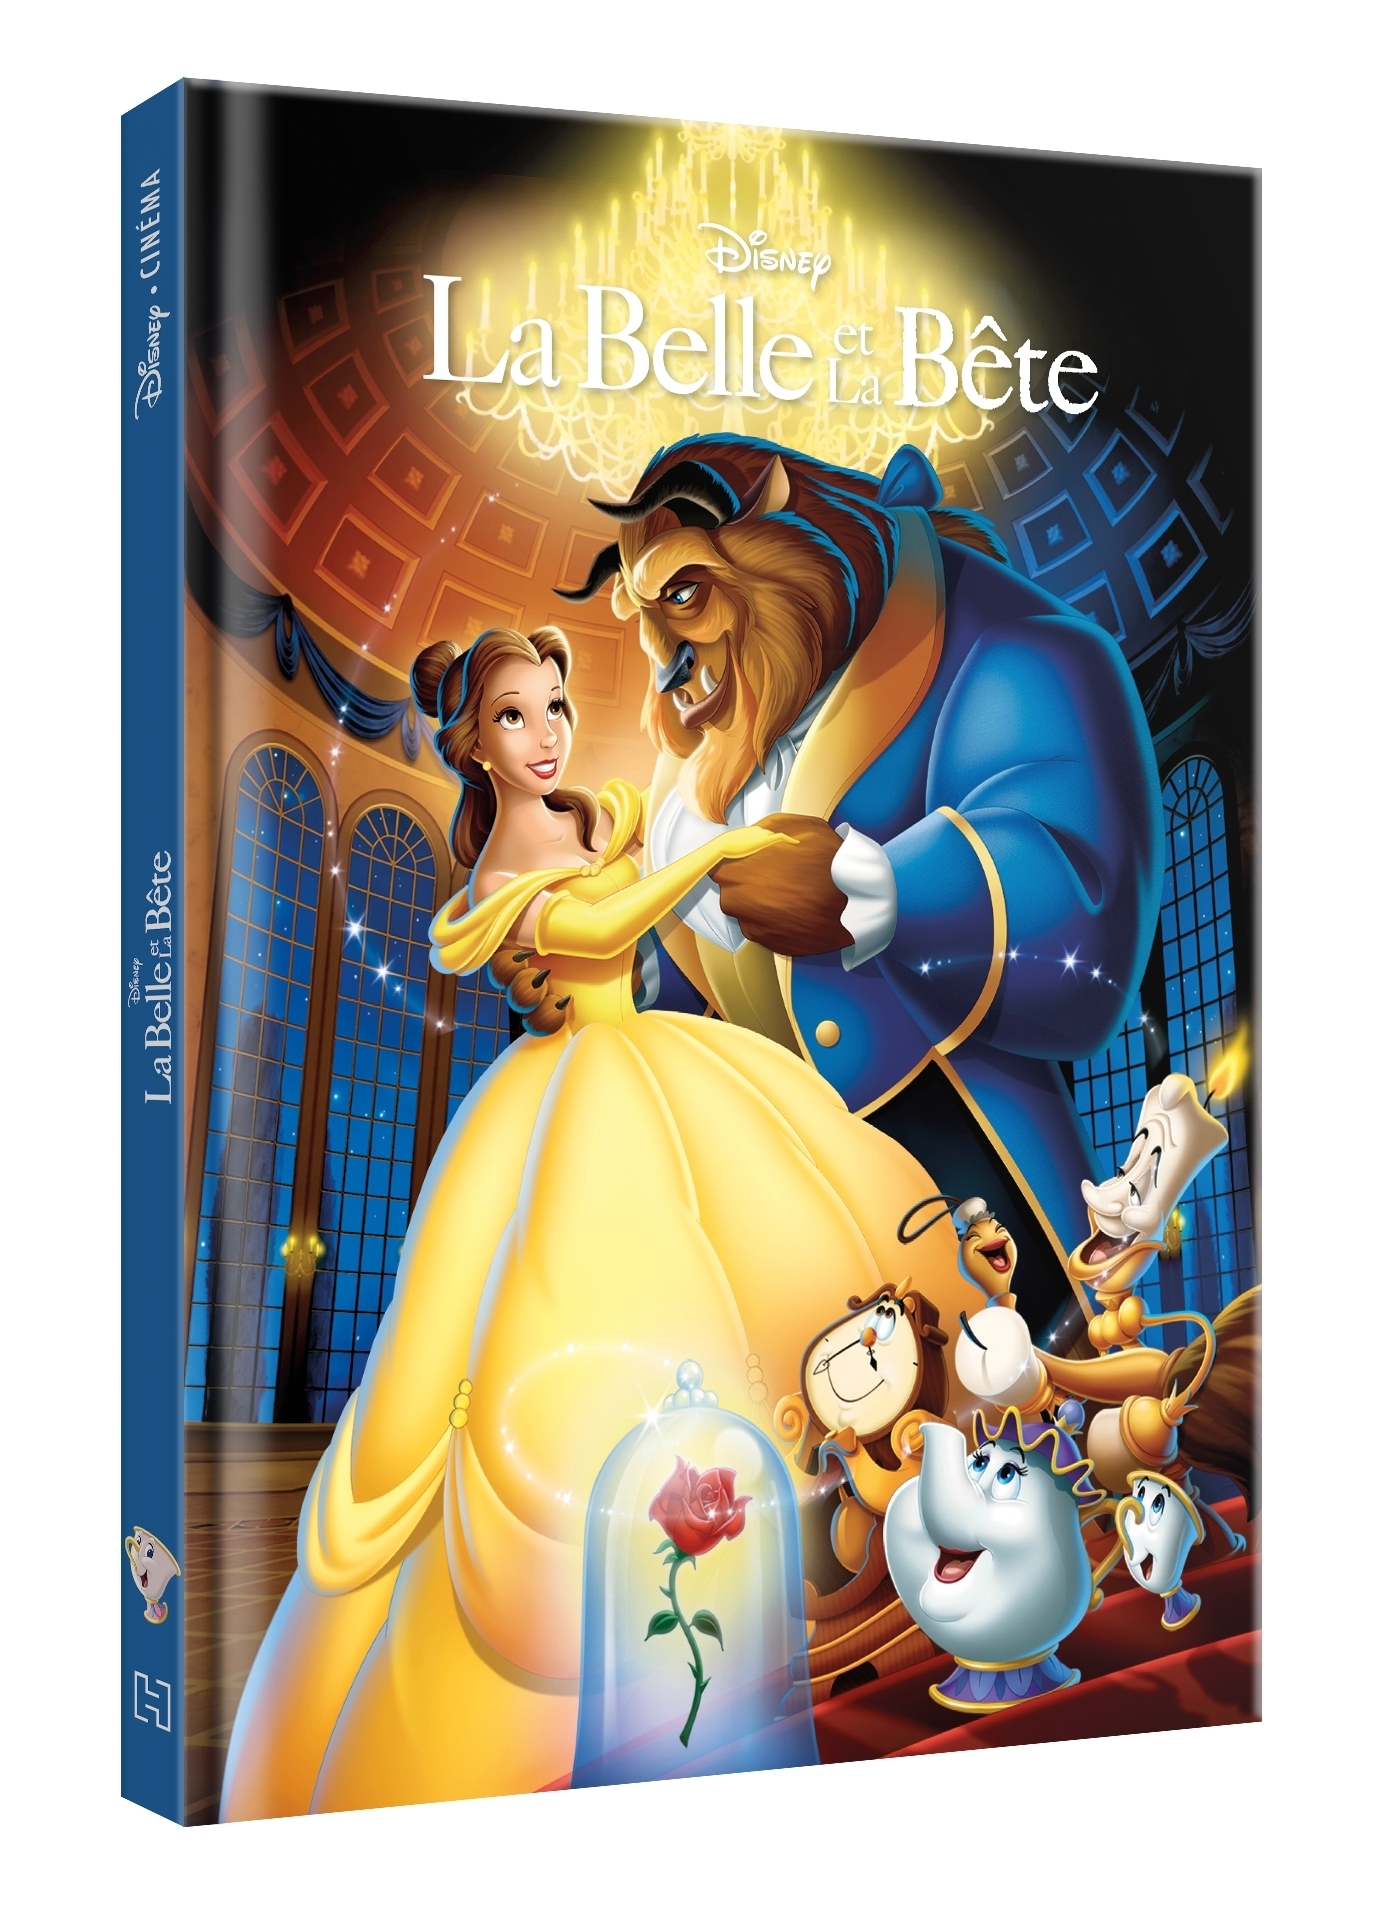 LA PETITE SIRÈNE - Disney Cinéma - L'histoire du film - Disney Princesses:  L'histoire du film